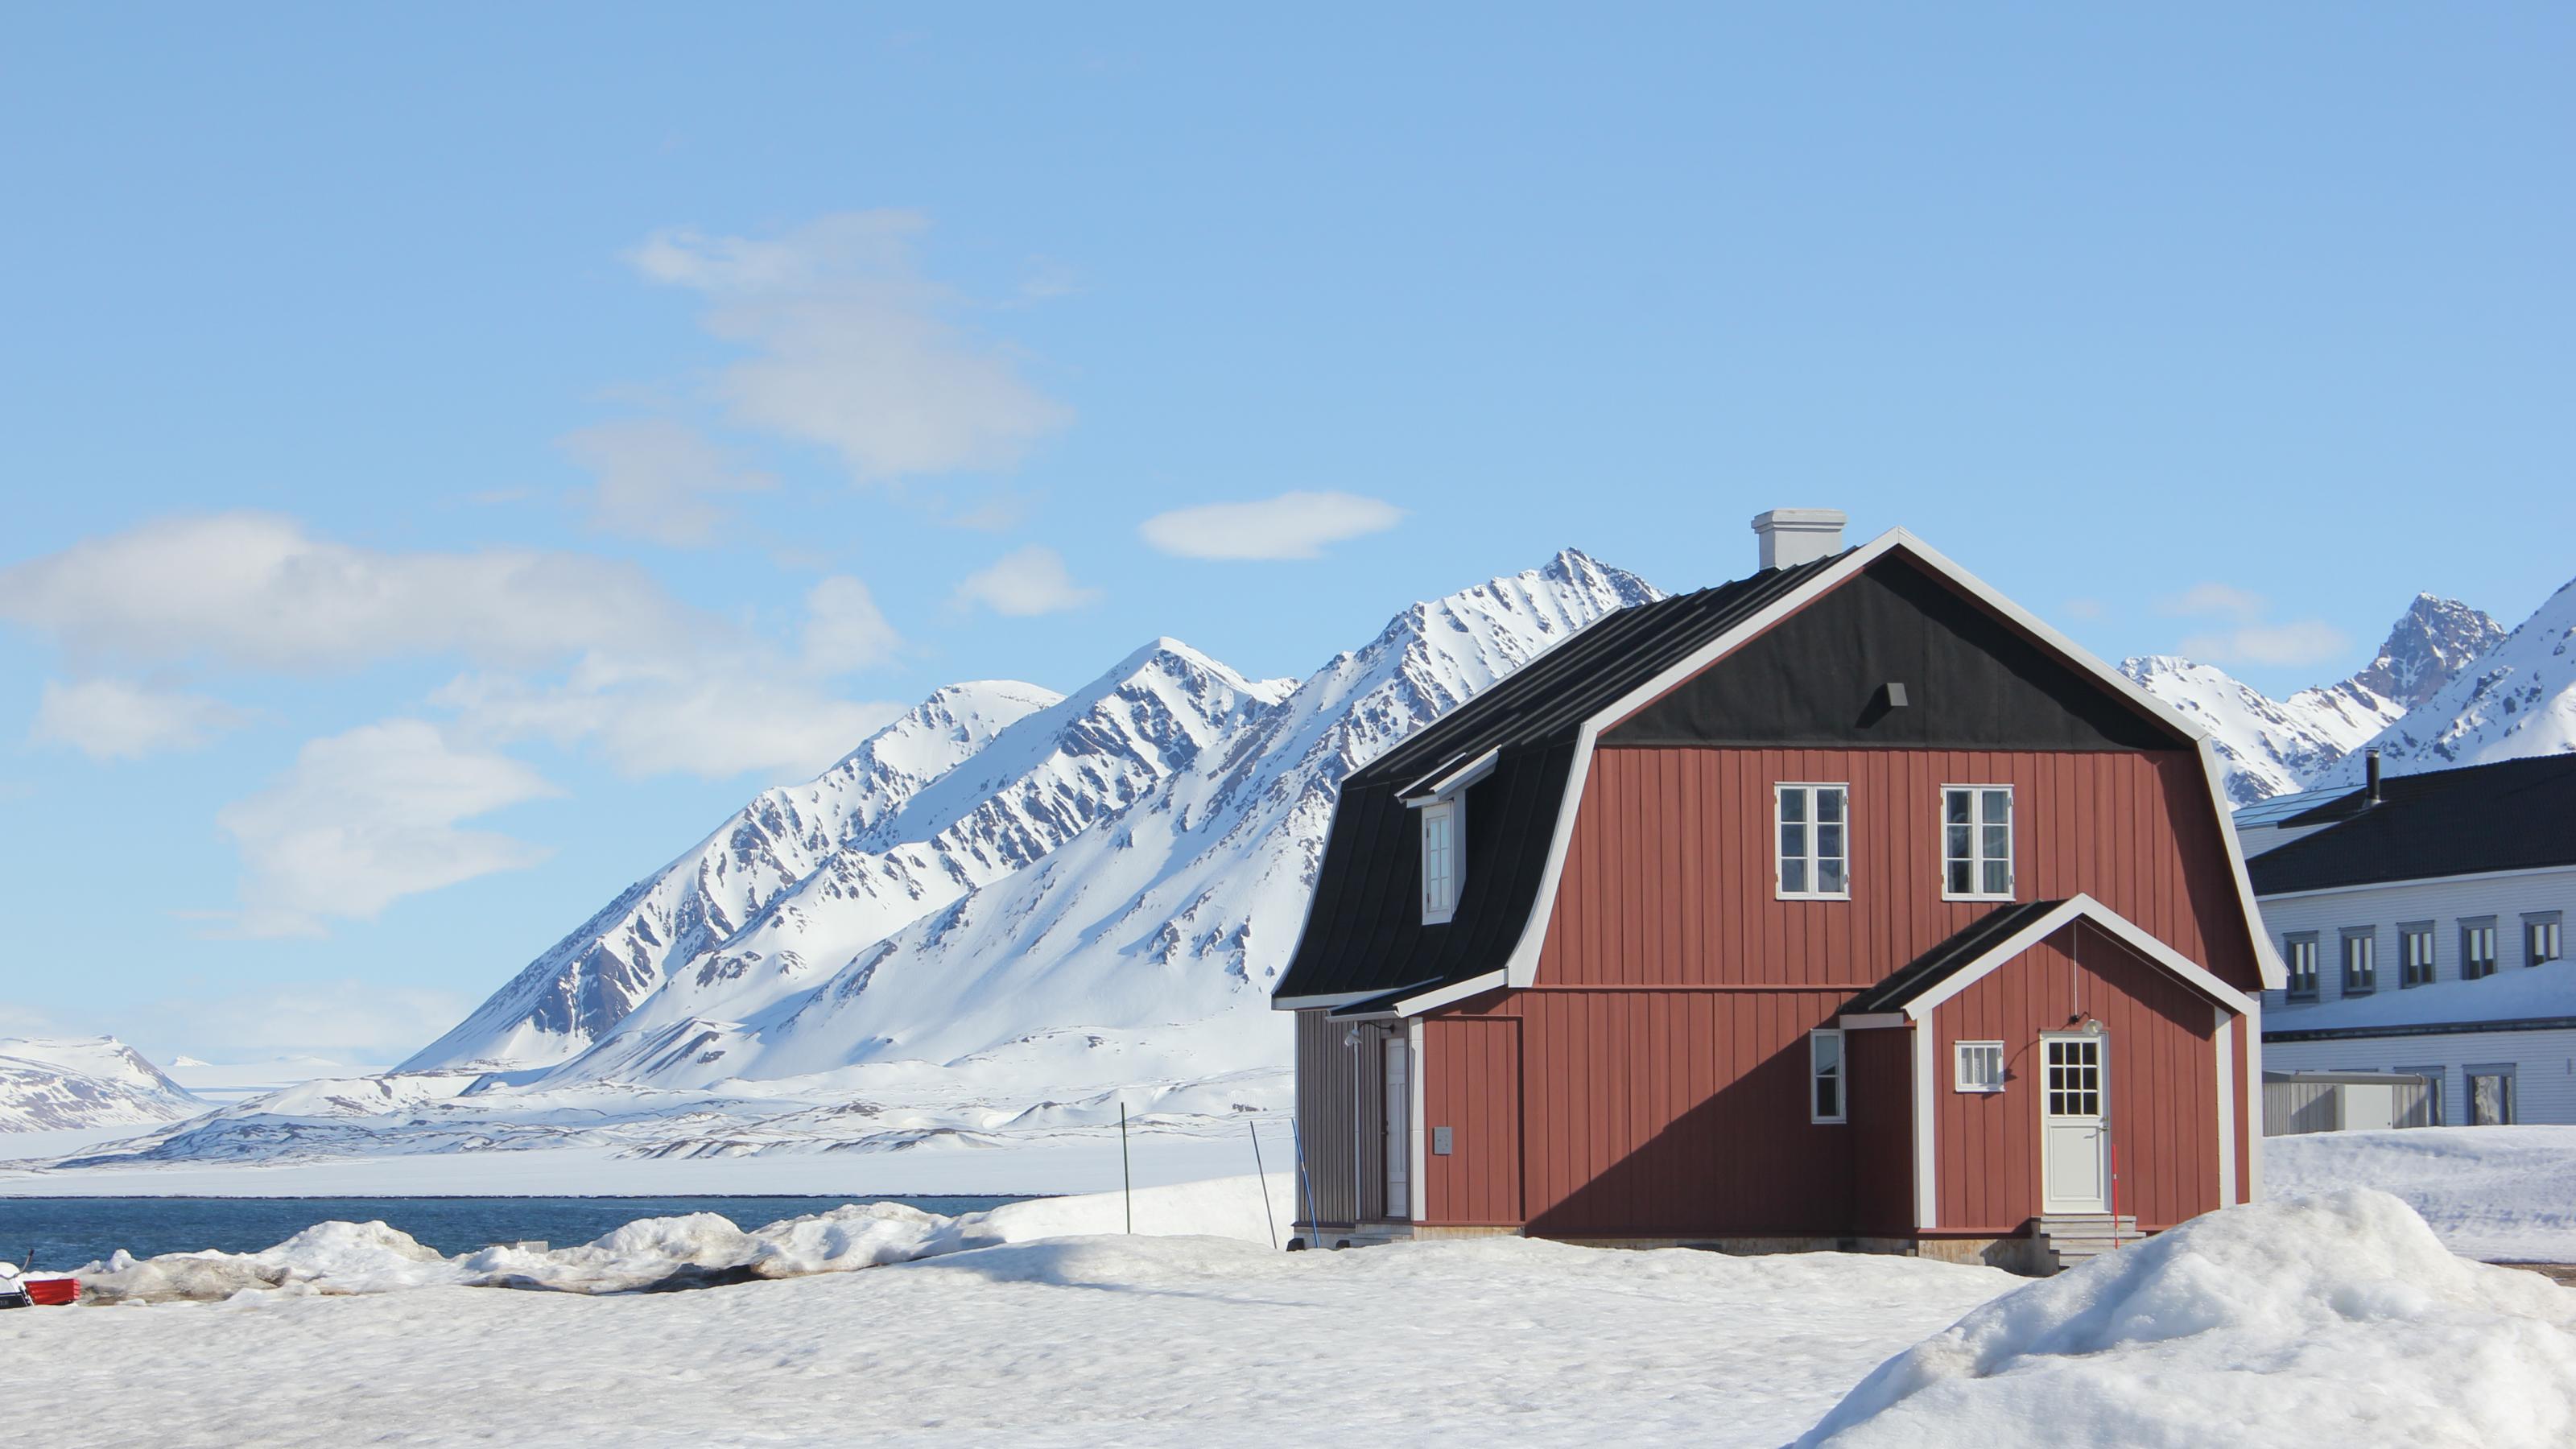 Gipfel mit Schnee auf der norwegischen Inselgruppe Spitzbergen (Svalbard). Auch in dieser unberührten Landschaft finden sich Umweltgifte.